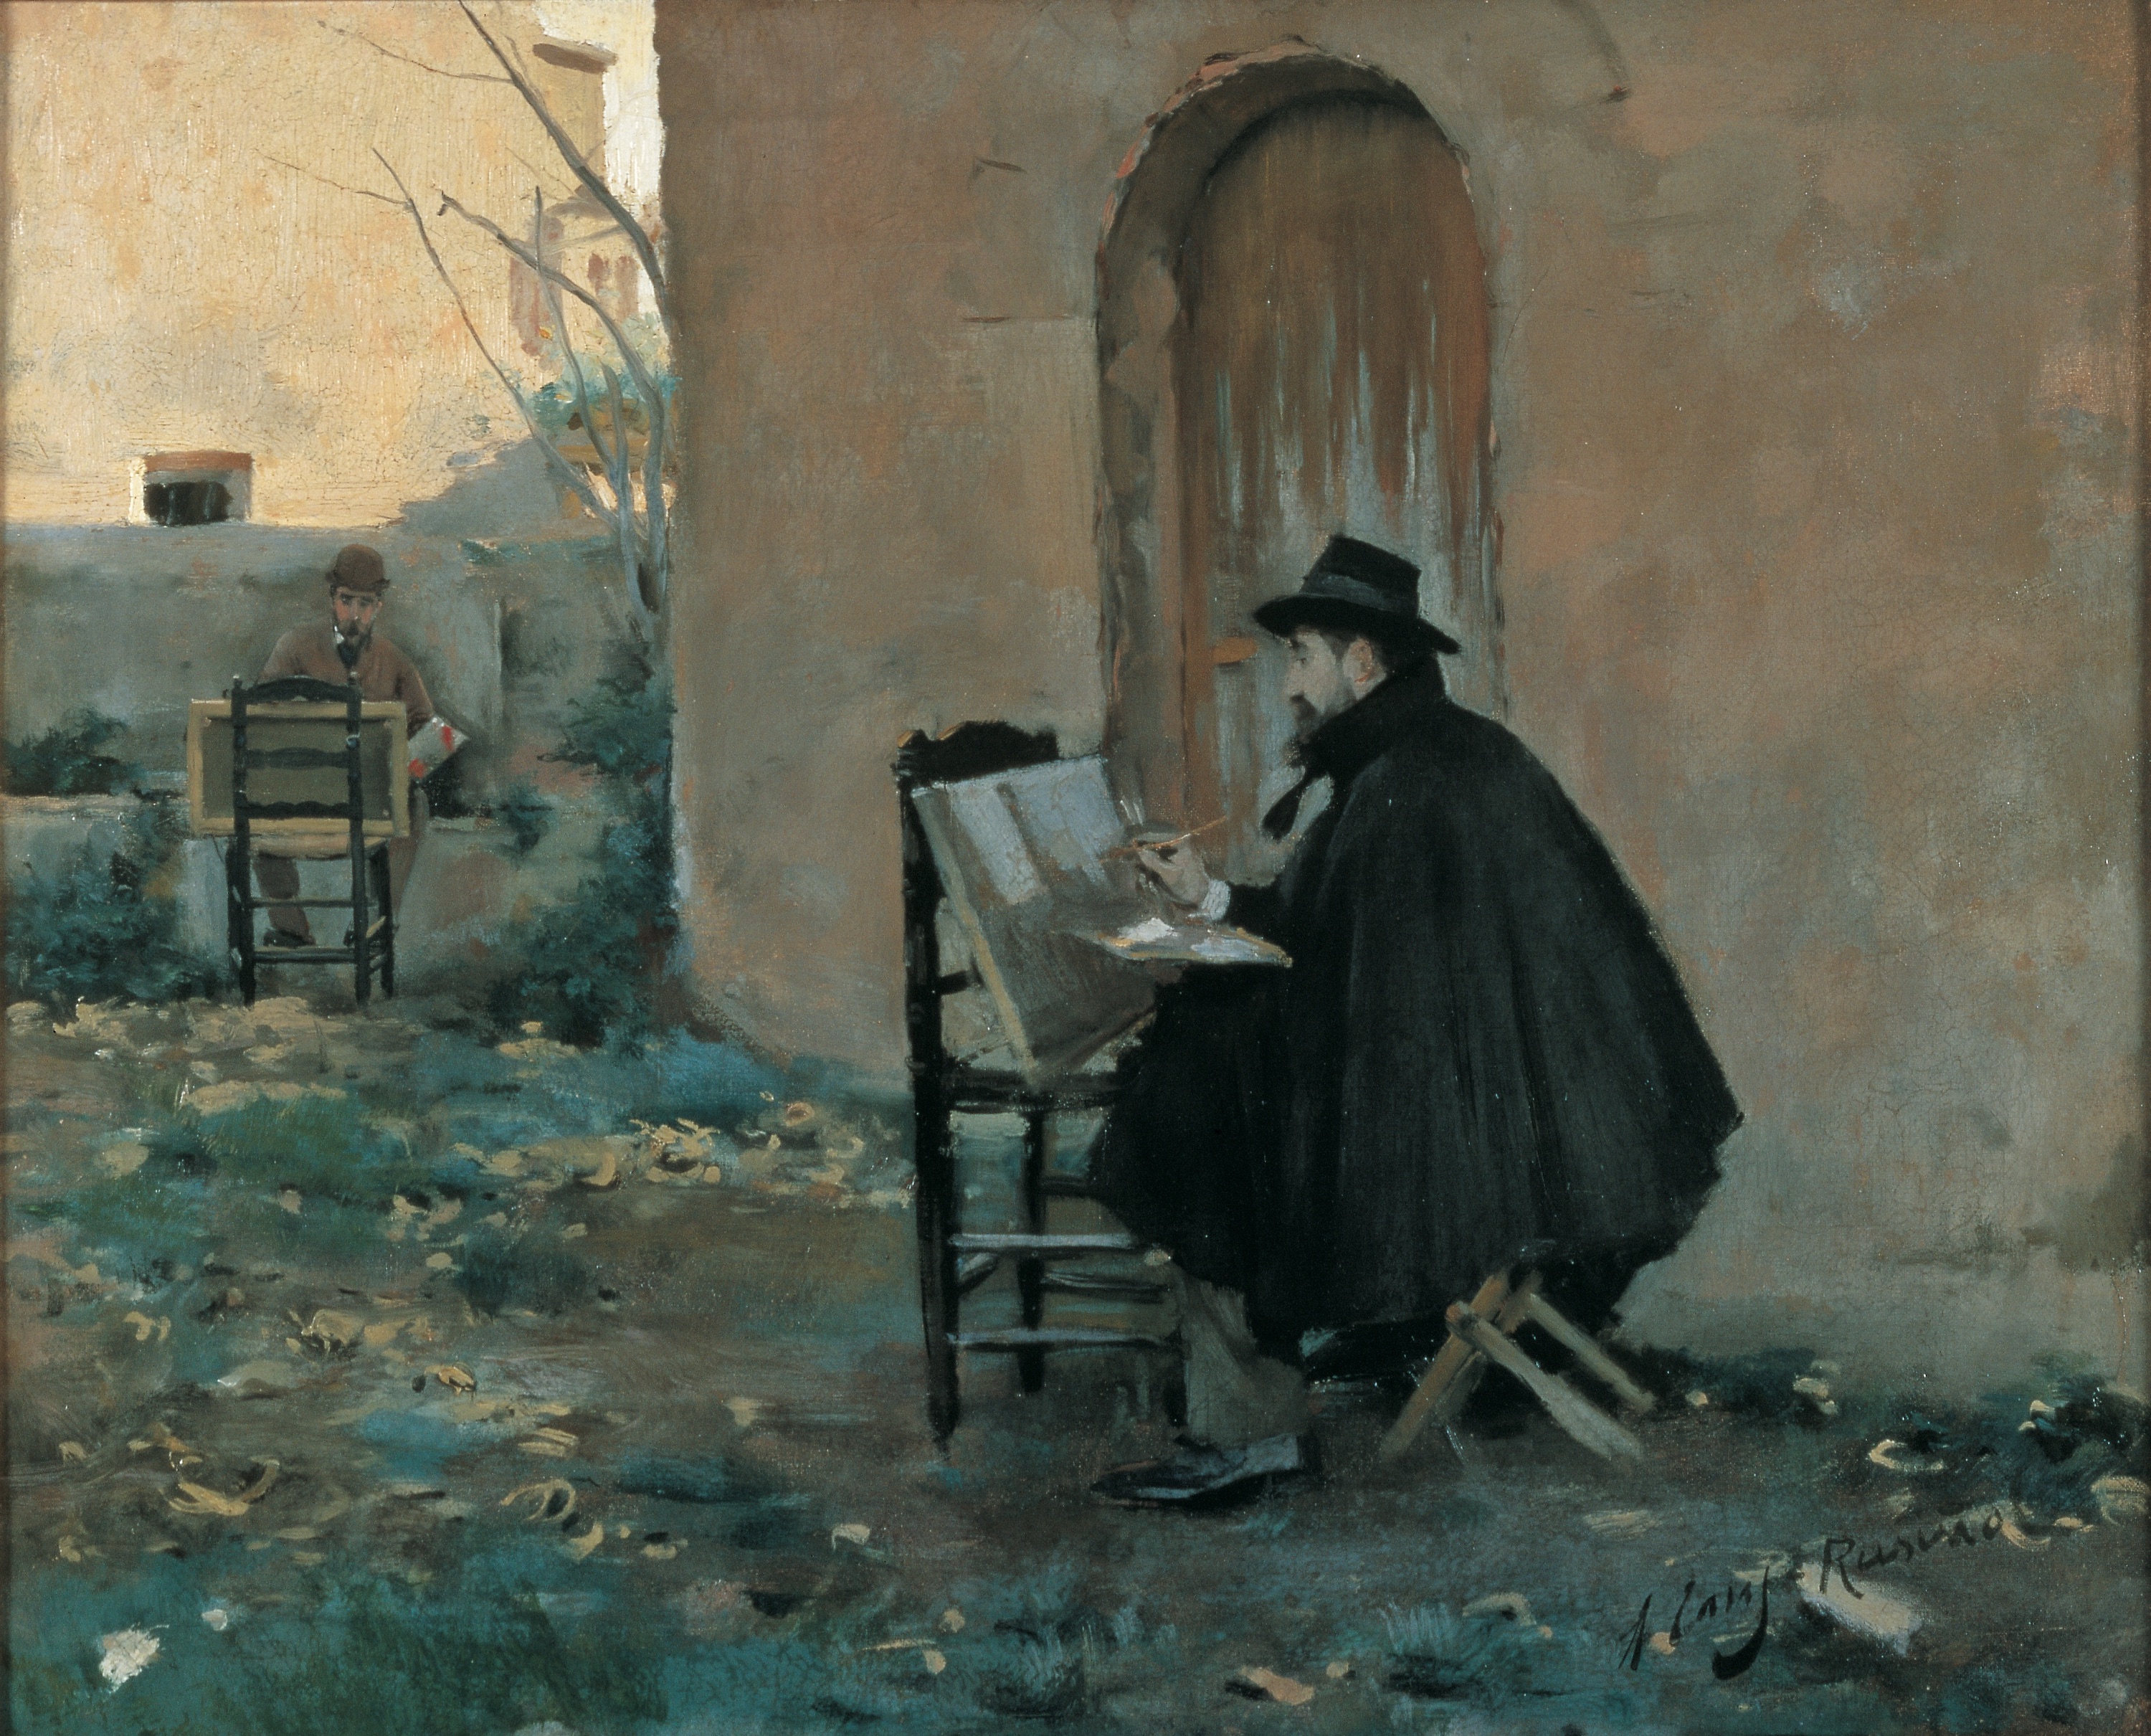 서로 그려주기 (Painting Each Other) by Santiago Rusinol and Ramon Casas - 1890 - 60 x 73 cm 